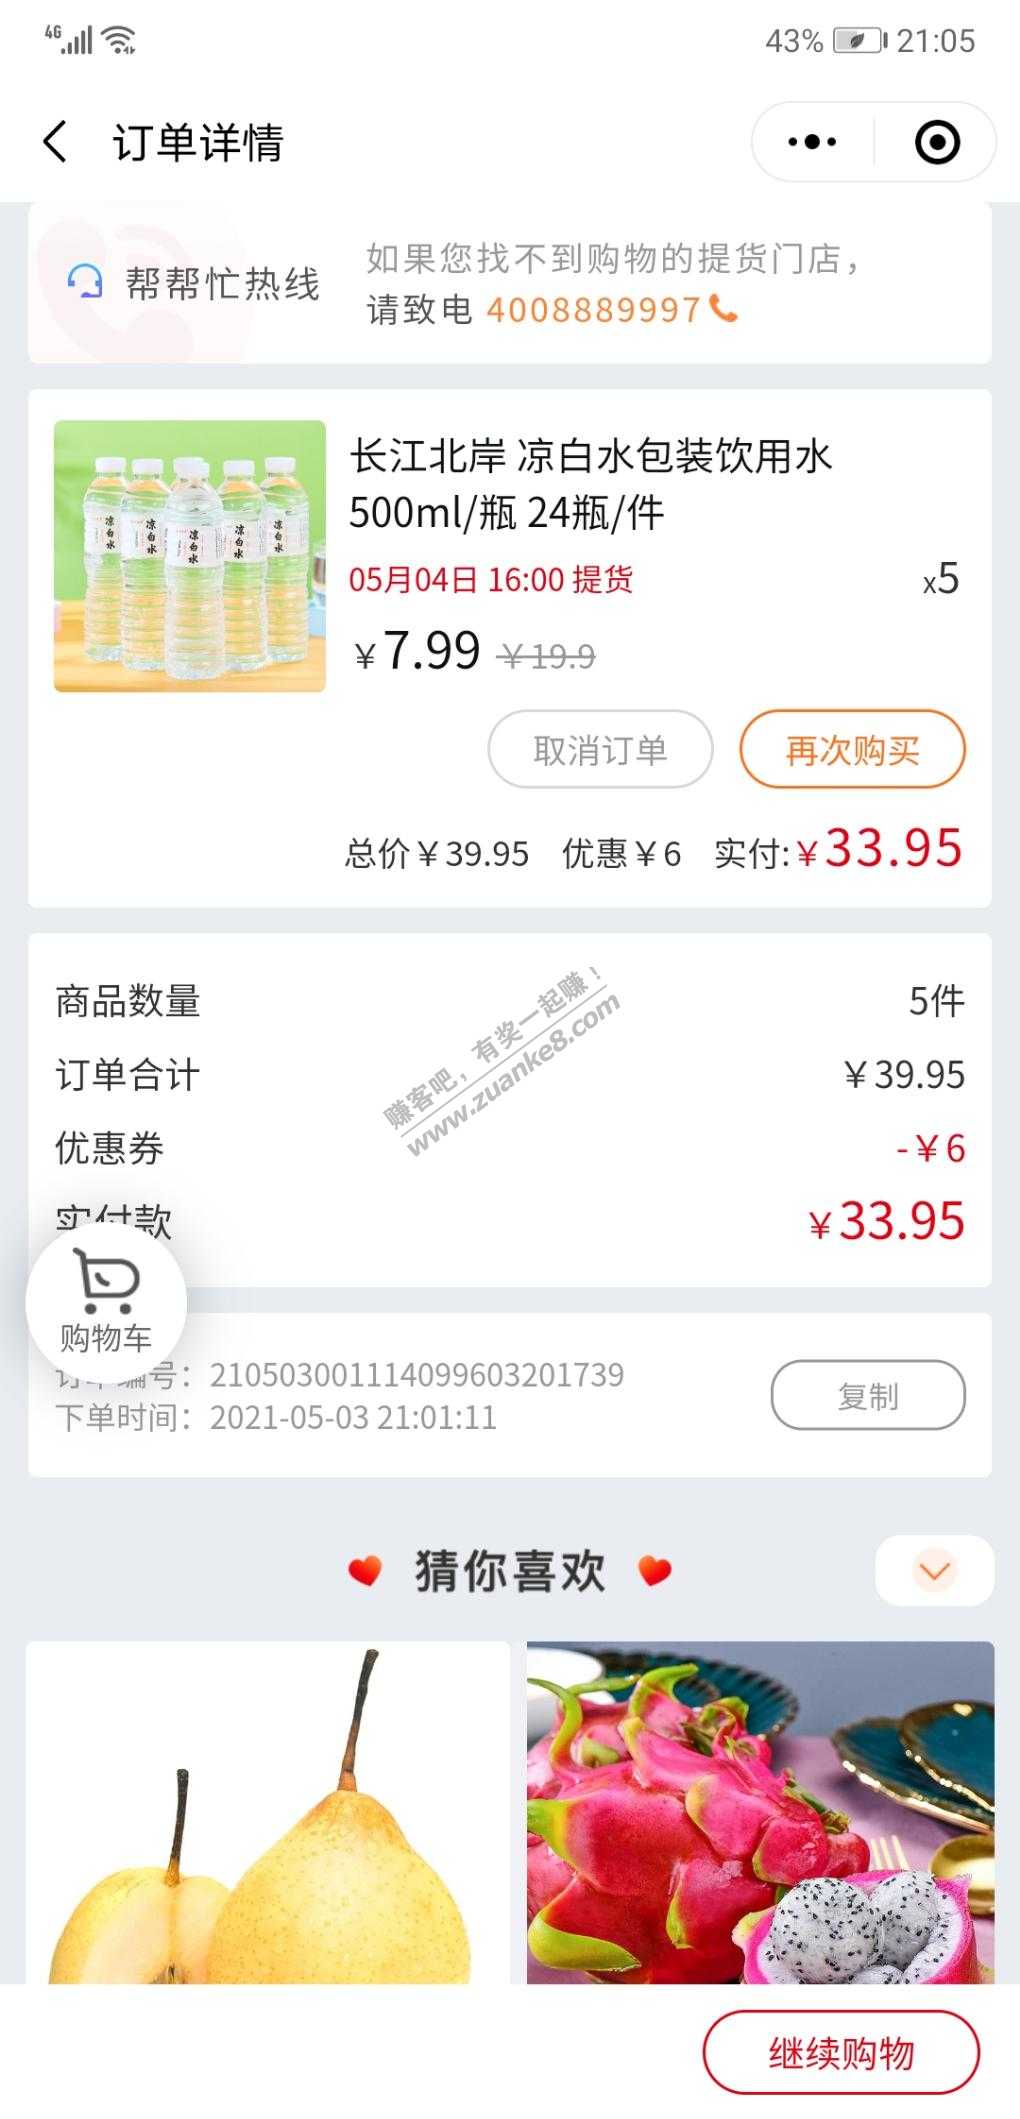 夏天凉白开特价-24瓶一提5提34元-惠小助(52huixz.com)